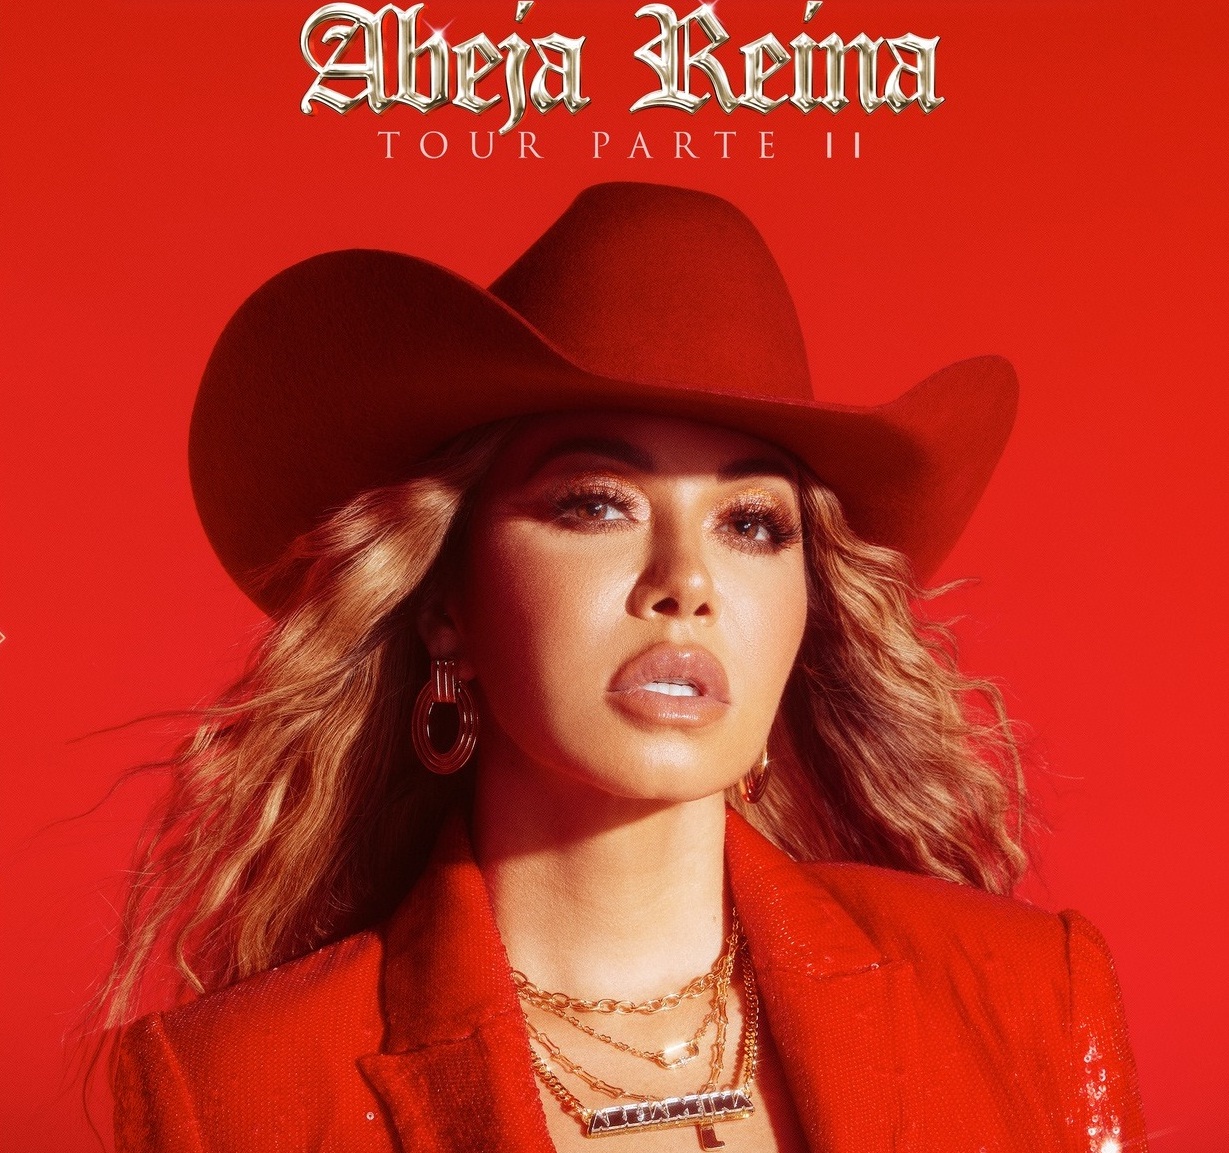 El nuevo disco de Chiquis Rivera 'Abeja Reina' tema por tema - Los